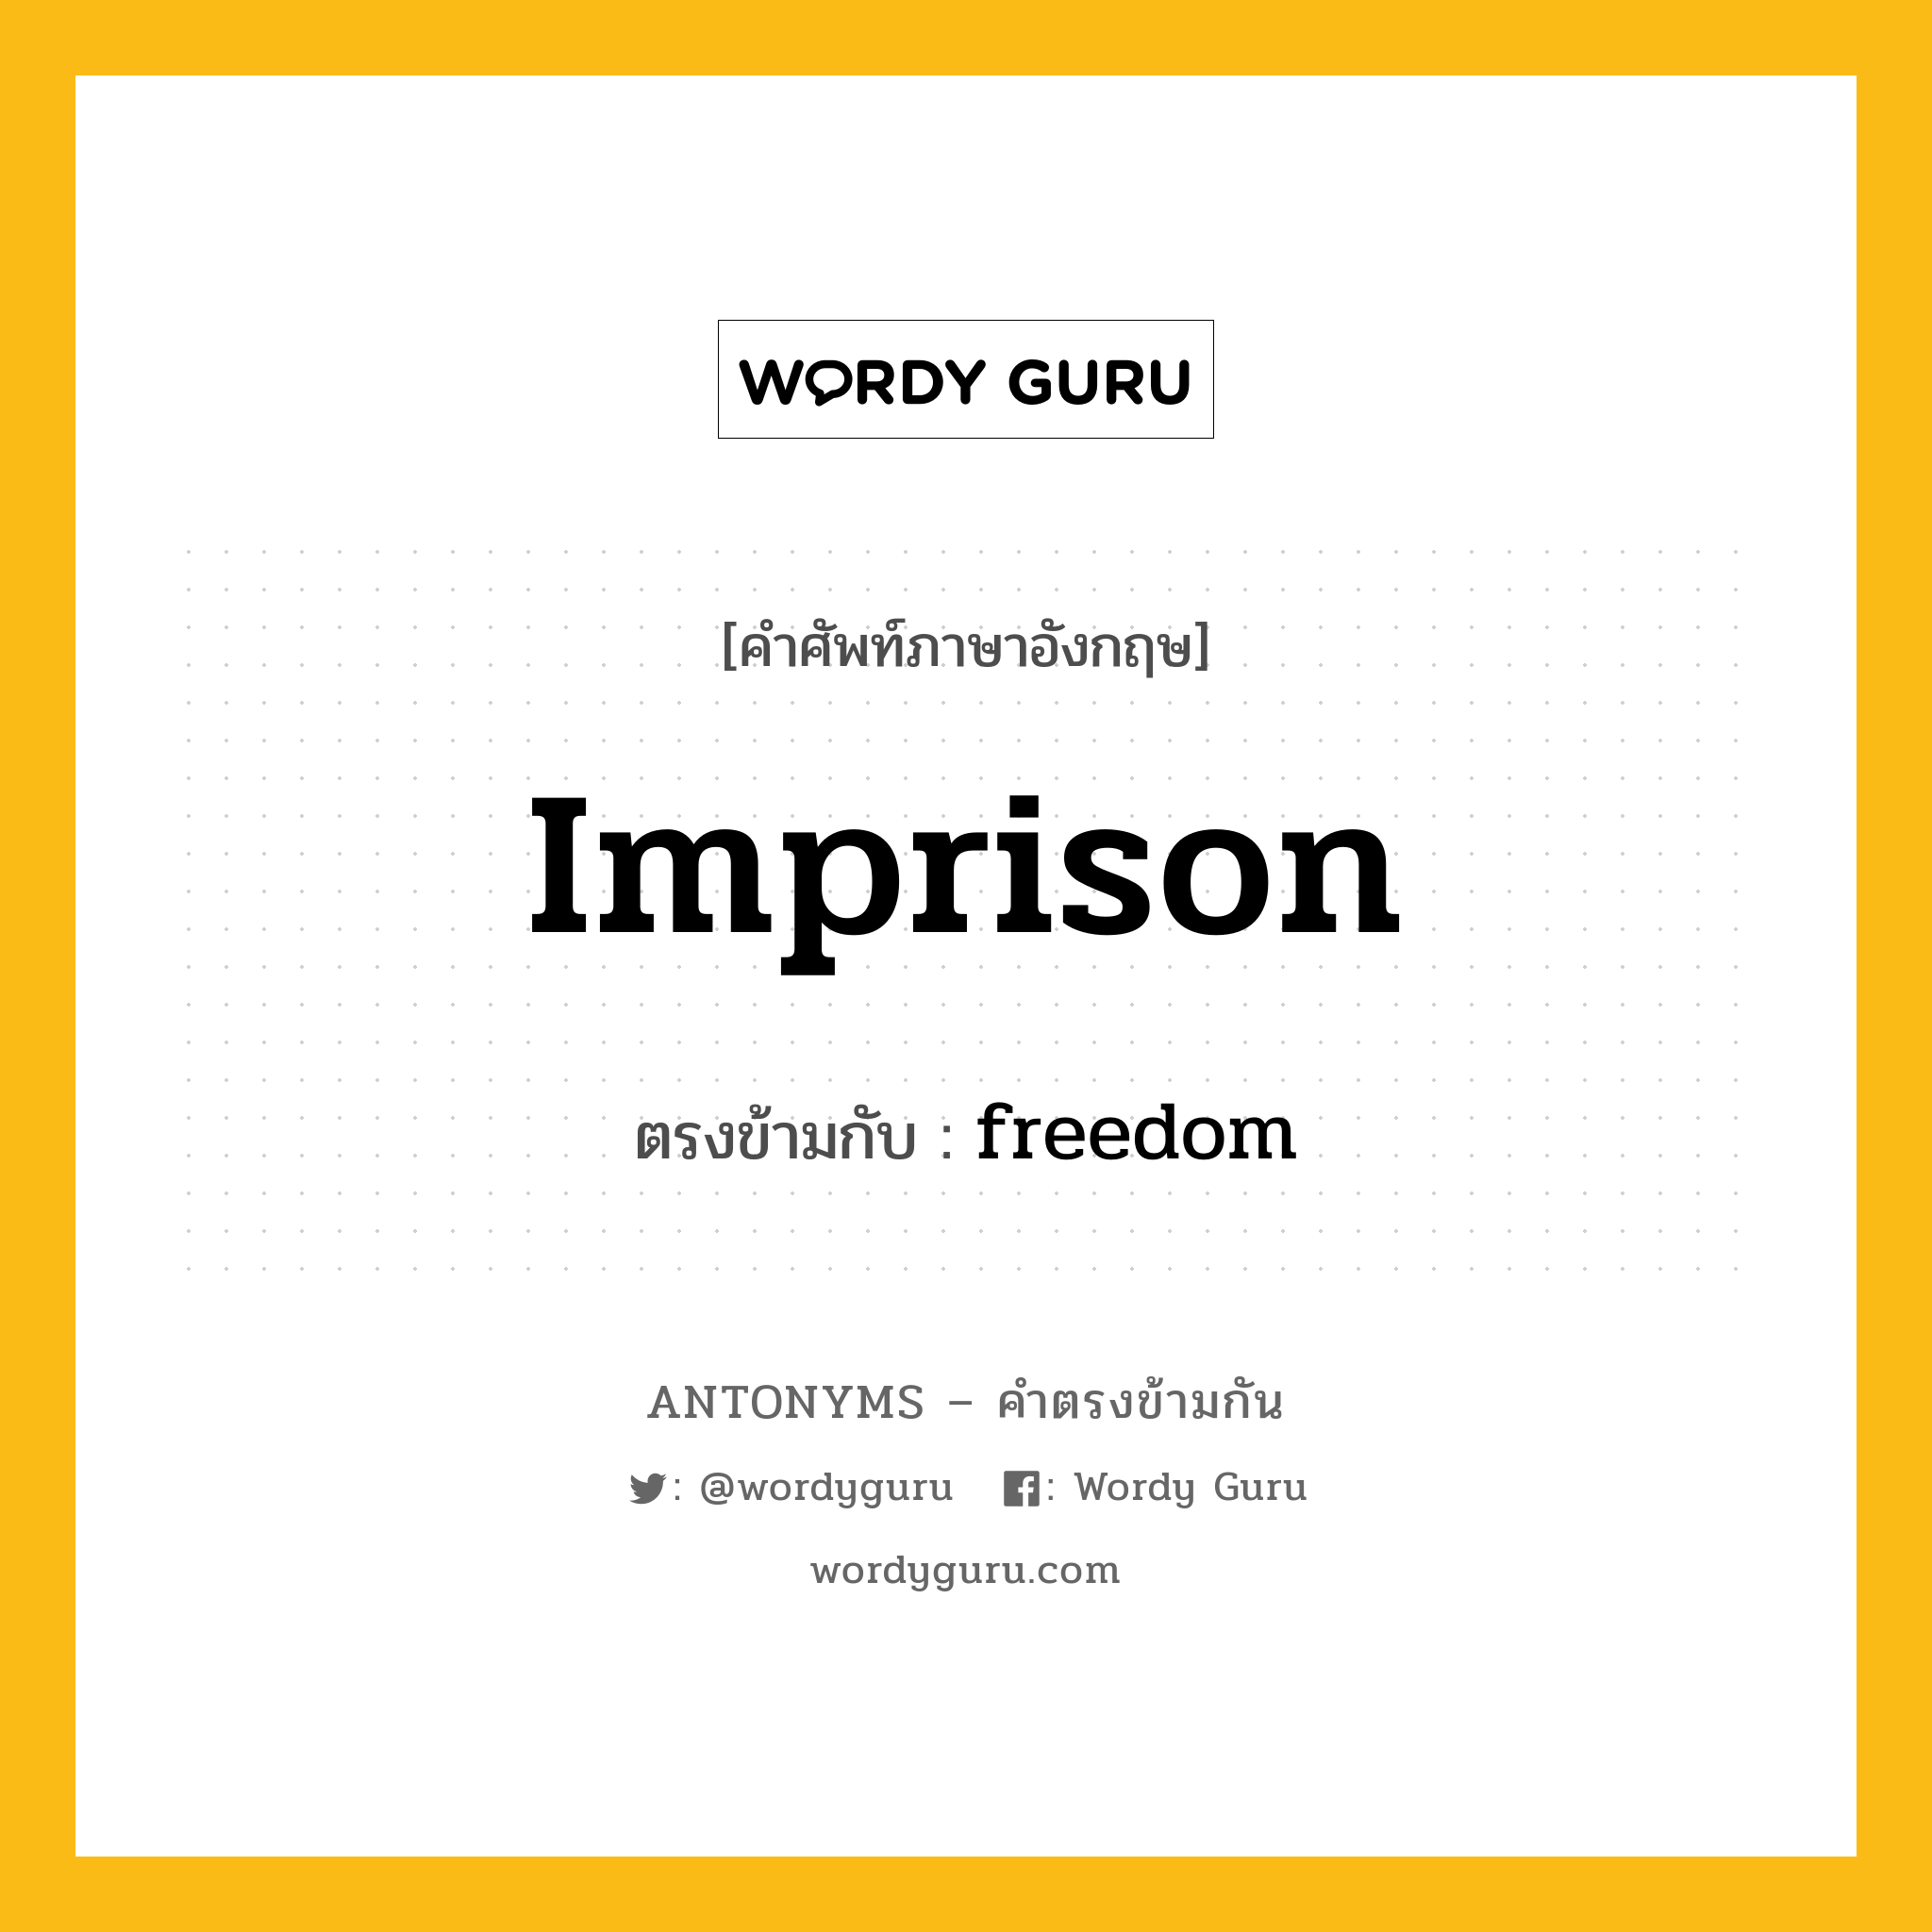 imprison เป็นคำตรงข้ามกับคำไหนบ้าง?, คำศัพท์ภาษาอังกฤษ imprison ตรงข้ามกับ freedom หมวด freedom